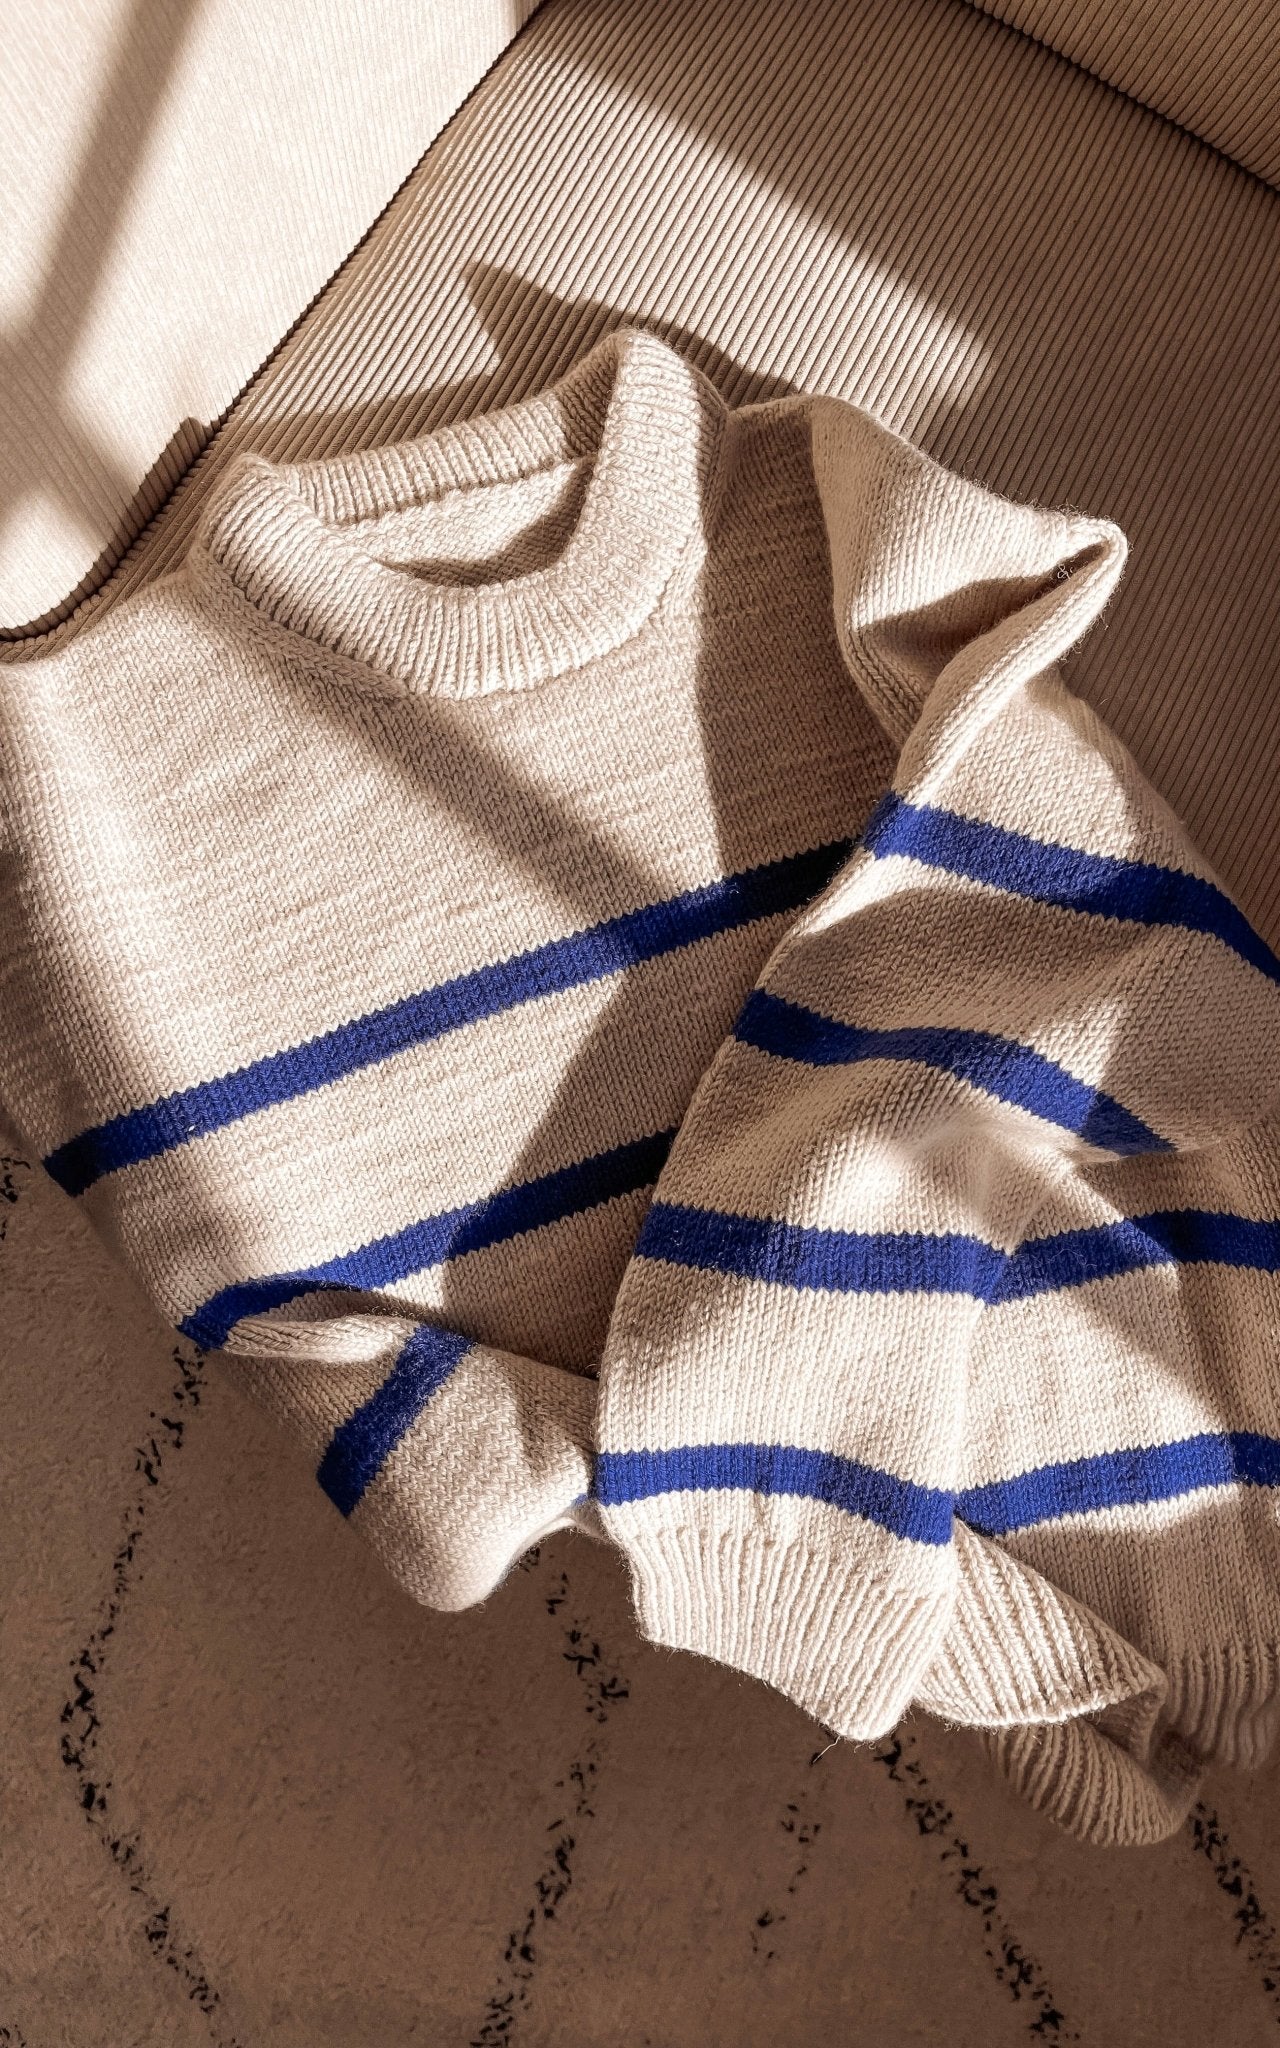 Marseille Sweater (gestreift) - DOUBLE SUNDAY - Strickset von PETITE KNIT jetzt online kaufen bei OONIQUE